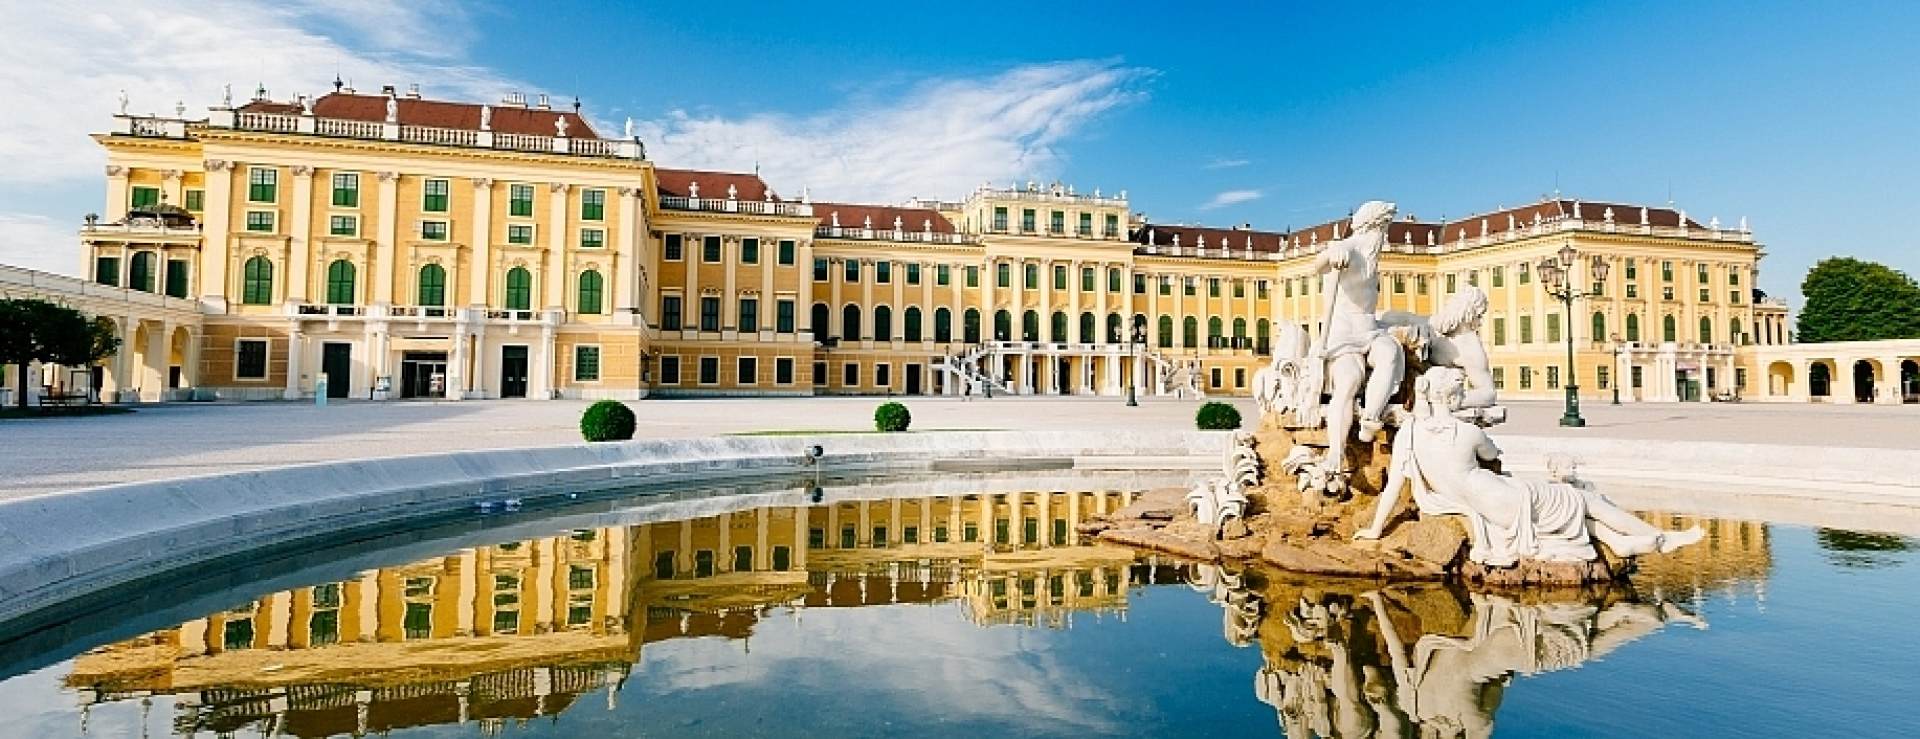 Flusskreuzfahrt auf der Blauen Donau in Wien, Abendessen und Konzert im Kaiserpalast Schönbrunn